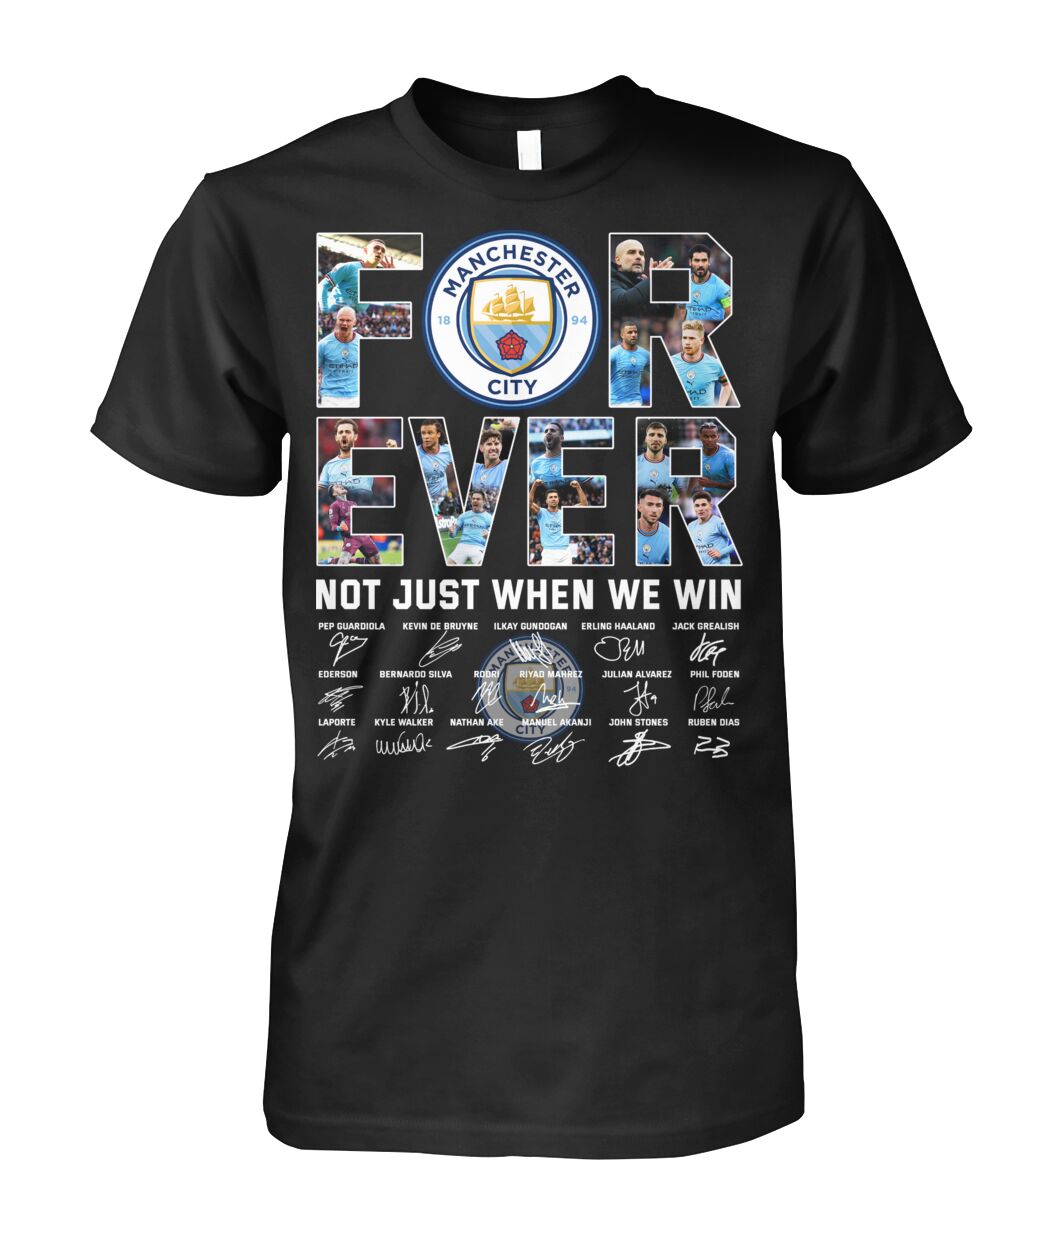 Check top t shirt Manchester City below 24